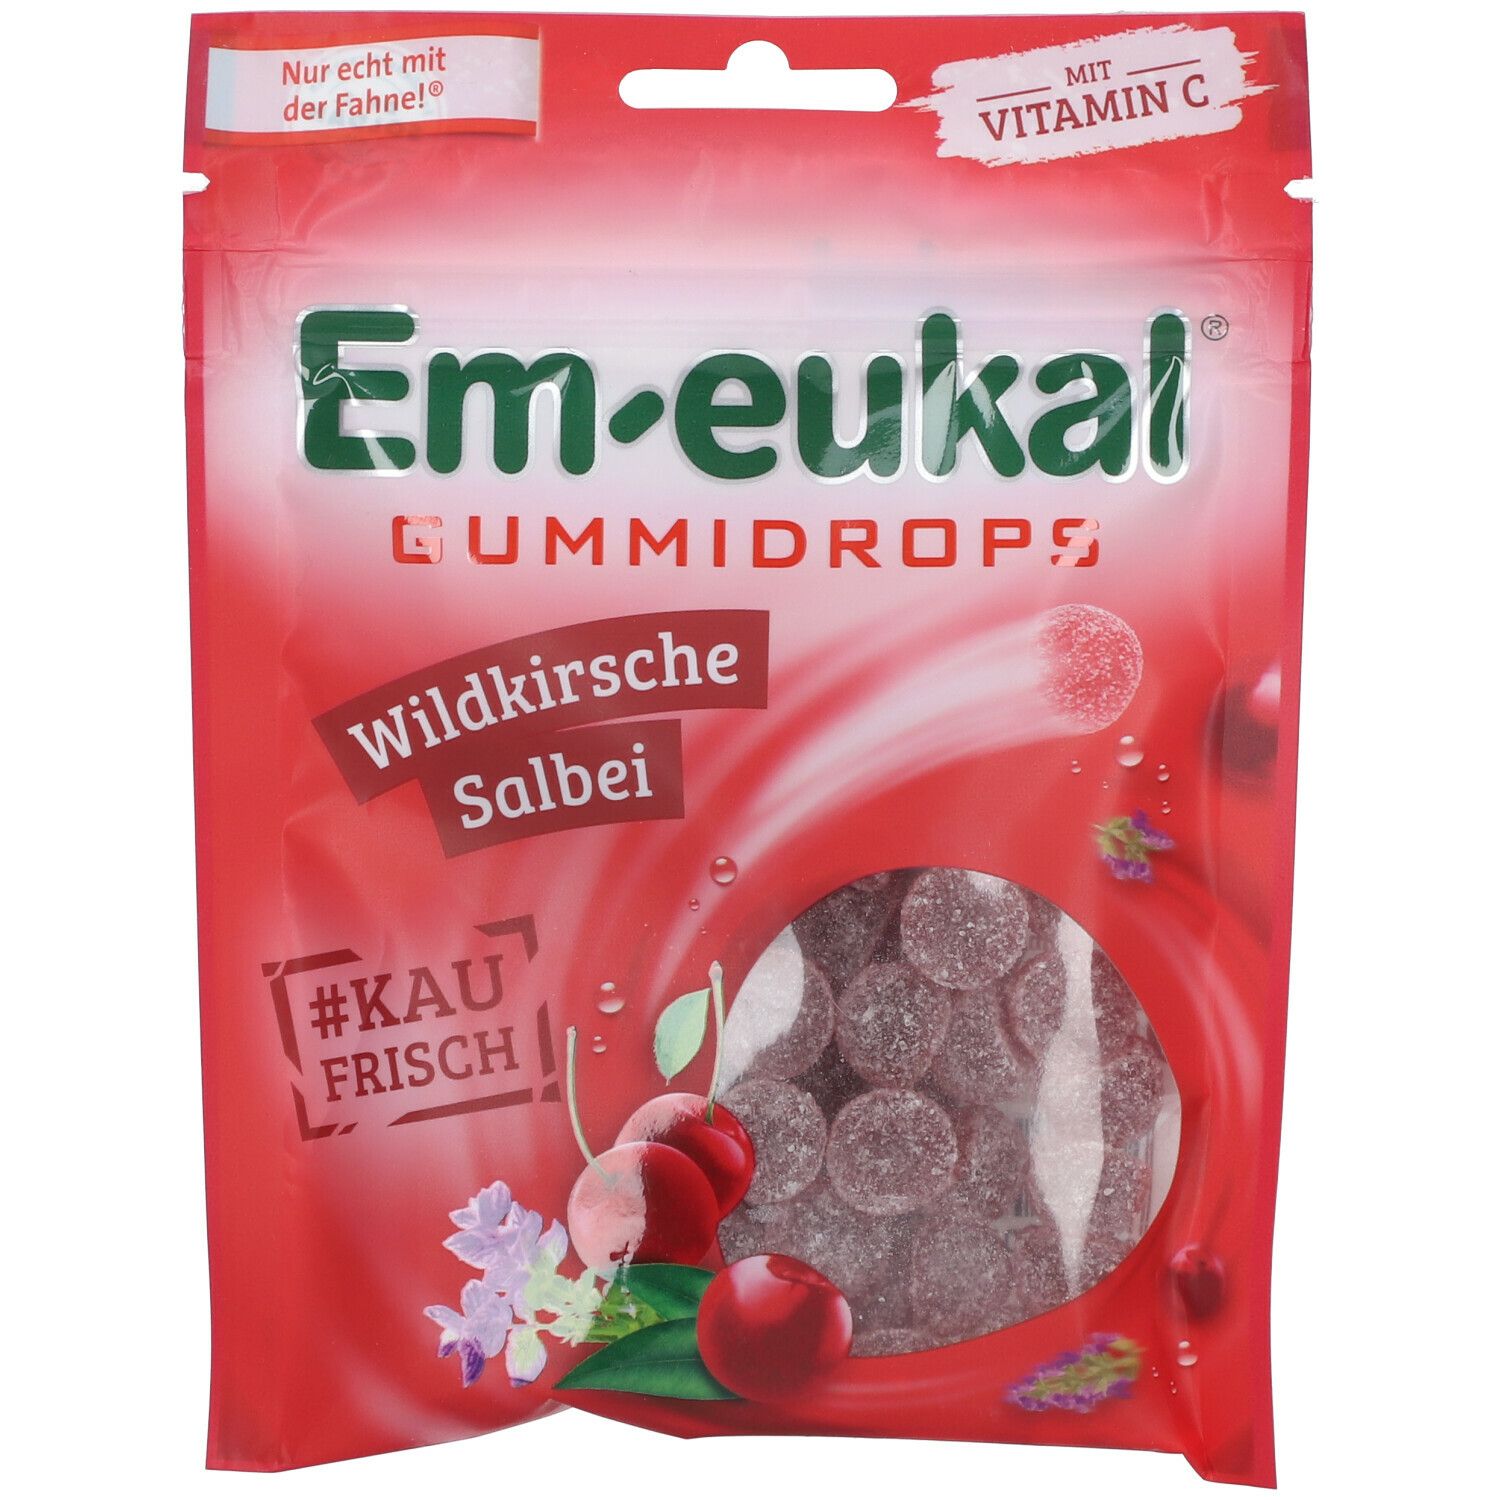 Em-eukal® Gummidrops Wildkirsche Salbei zuckerhaltig